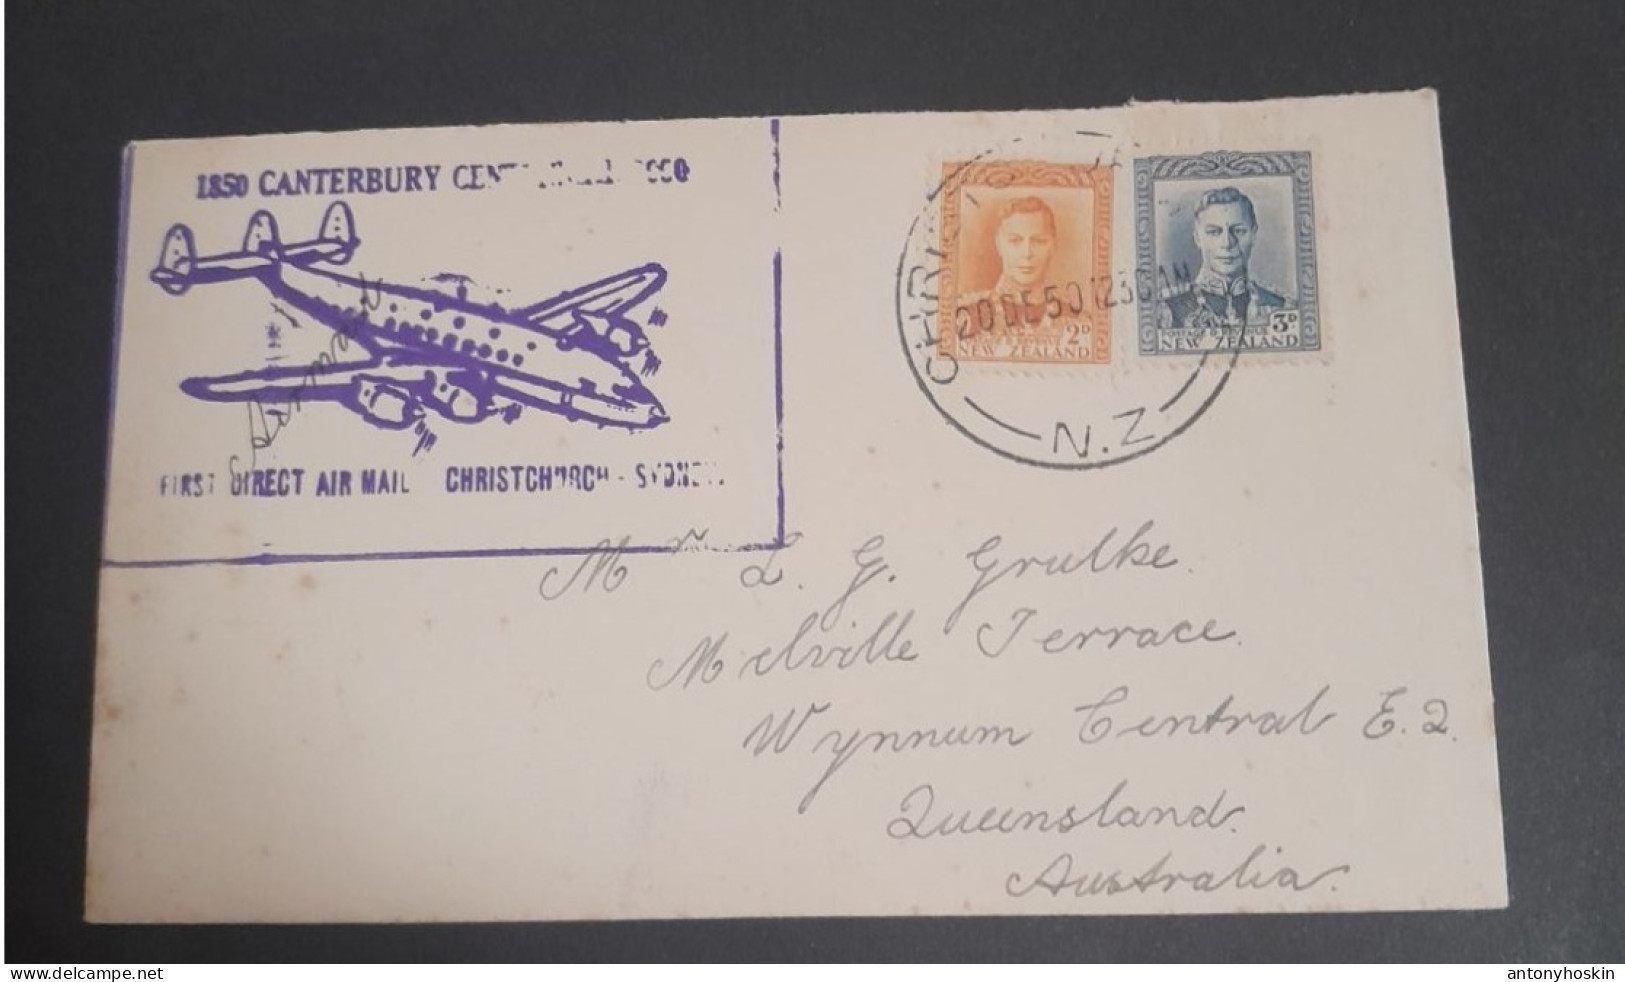 20 Dec 1950 First Direct Air Mail Christchurch -Sydney - Luchtpost